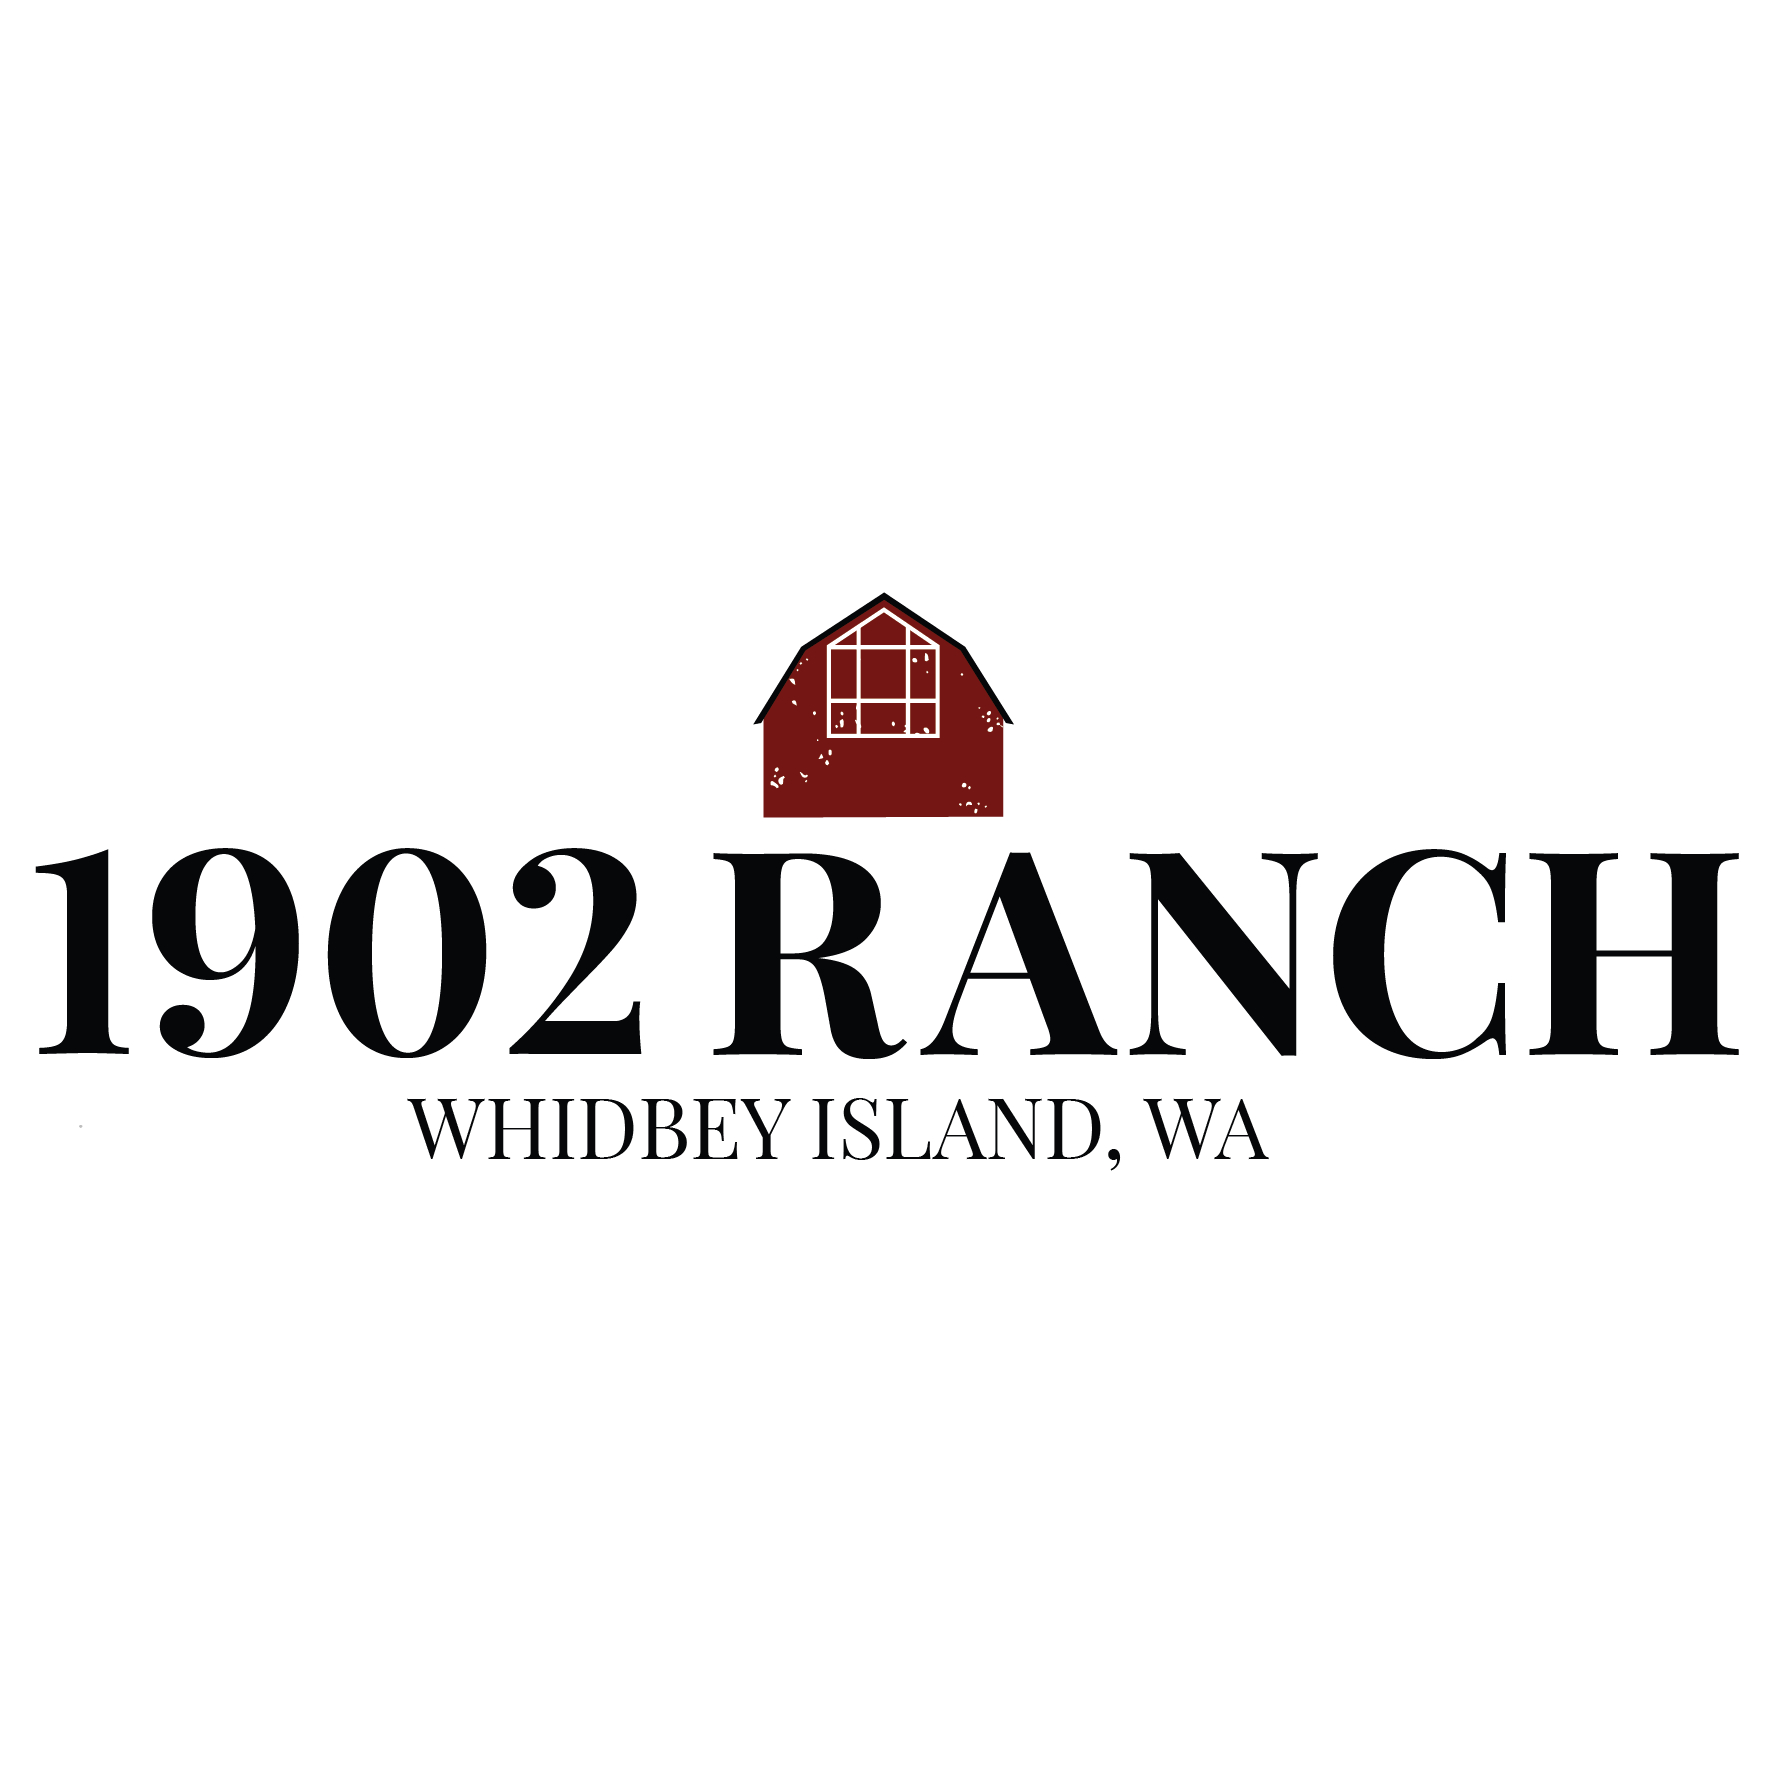 1902 Ranch